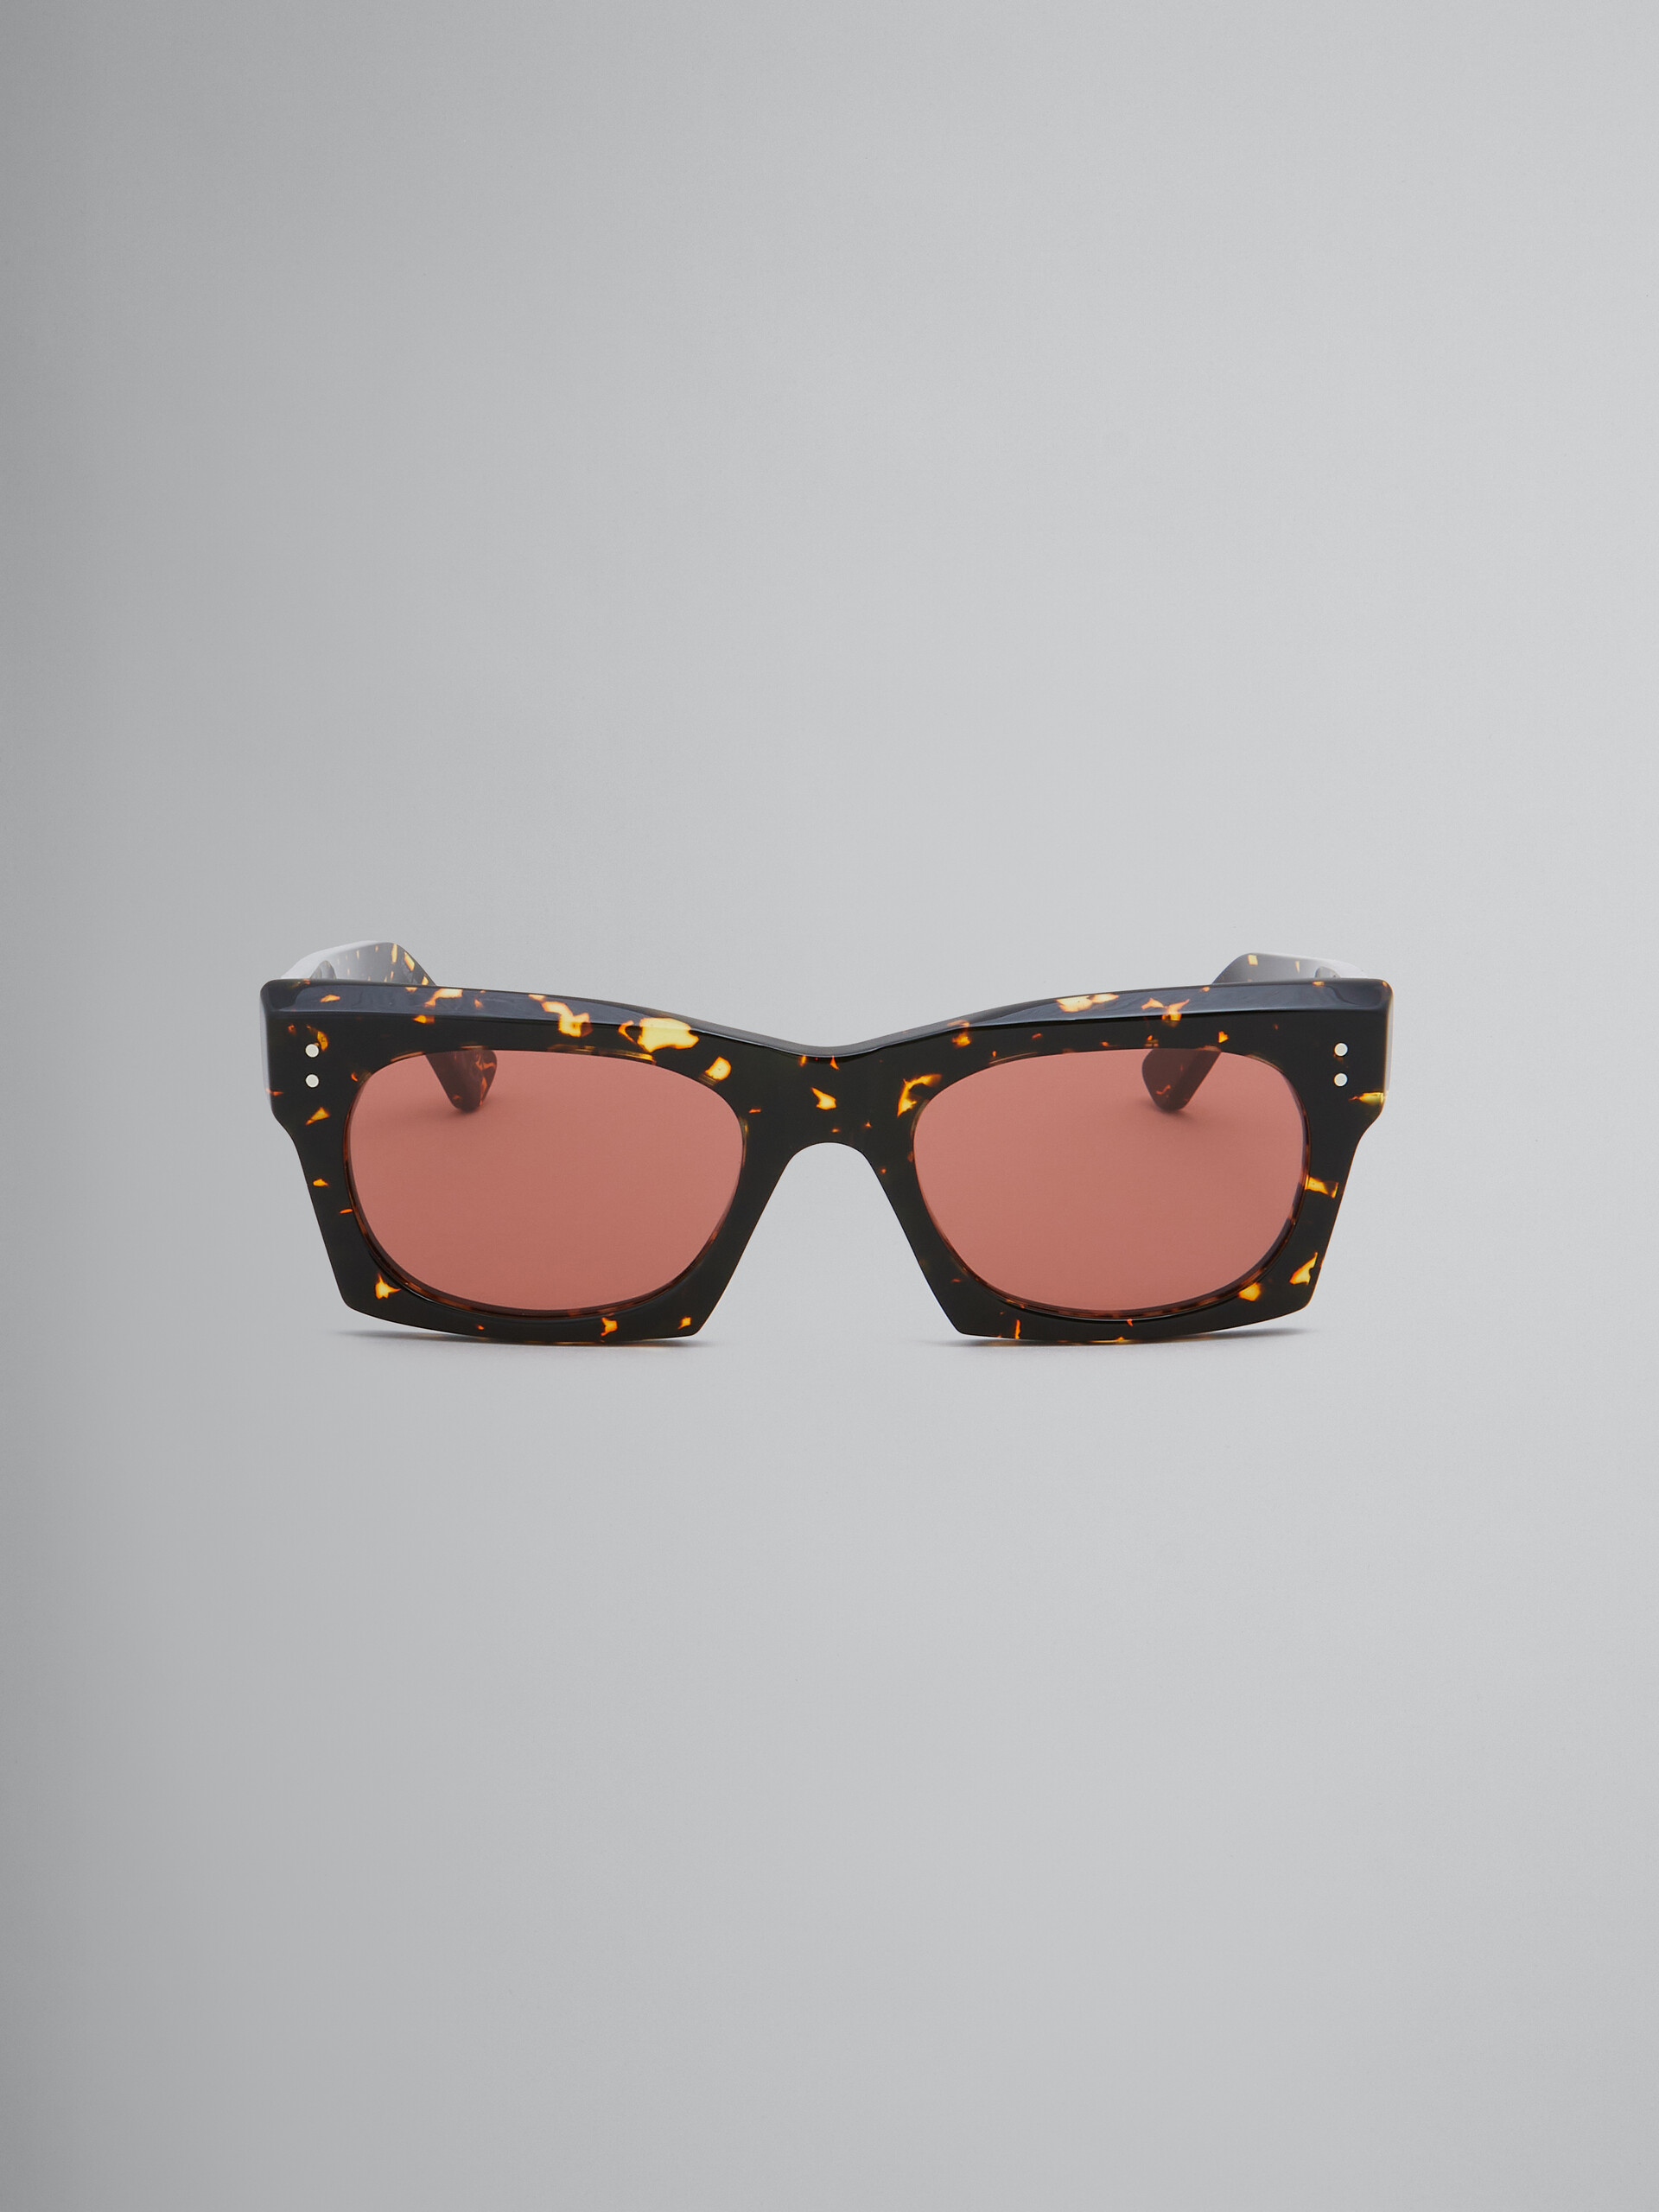 Schwarze Sonnenbrille Edku - Optisch - Image 1